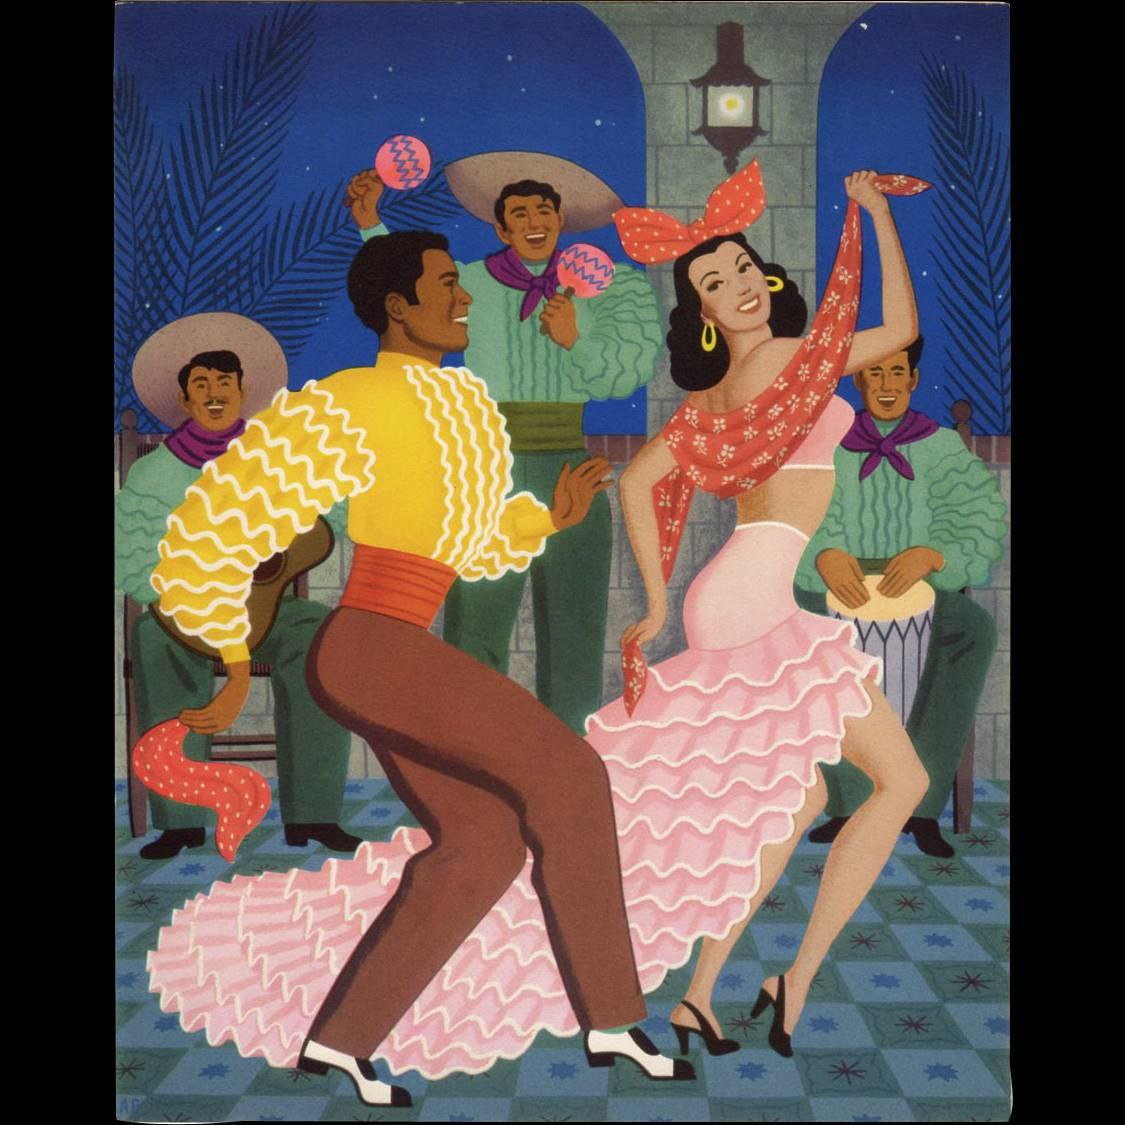 Кубинский танец 5